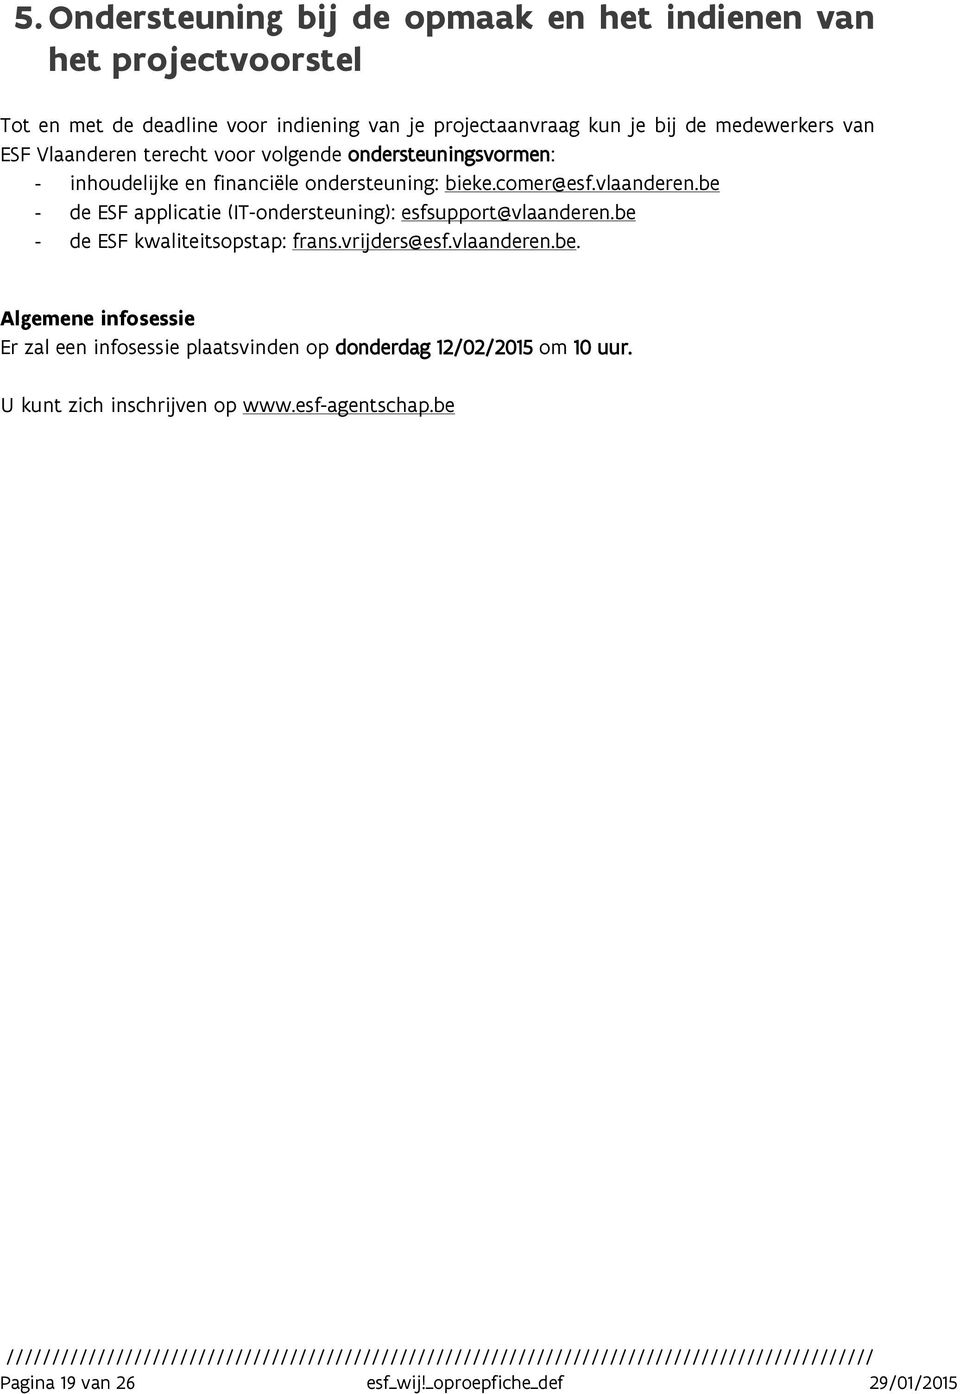 be - de ESF applicatie (IT-ondersteuning): esfsupport@vlaanderen.be - de ESF kwaliteitsopstap: frans.vrijders@esf.vlaanderen.be. Algemene infosessie Er zal een infosessie plaatsvinden op donderdag 12/02/2015 om 10 uur.